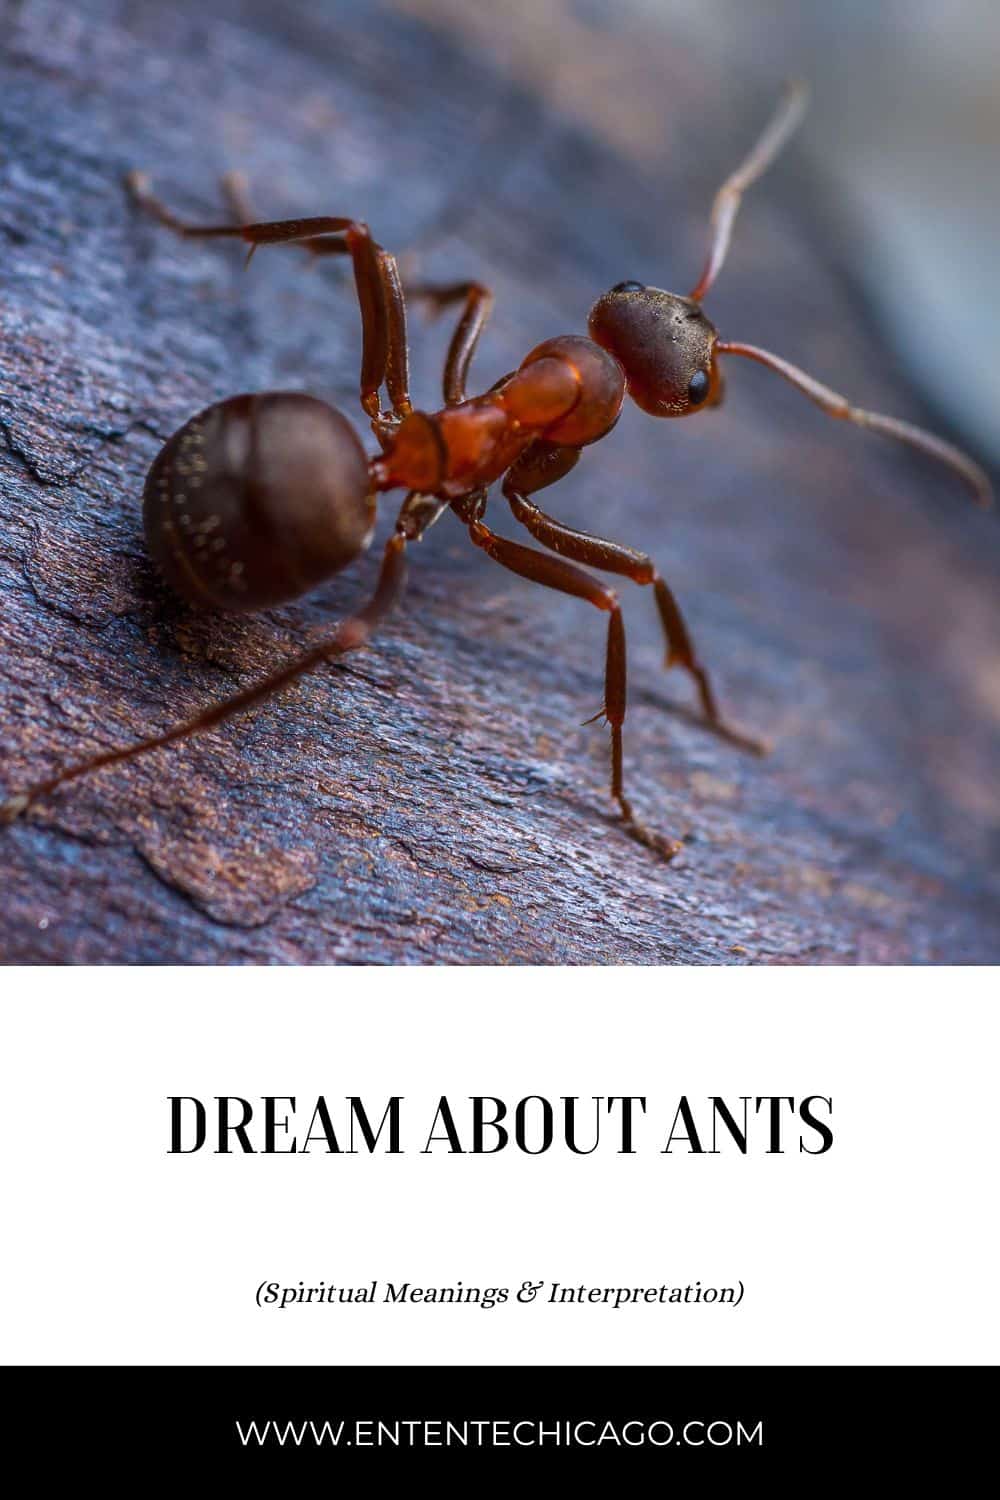  11 Interprétation des rêves de fourmis